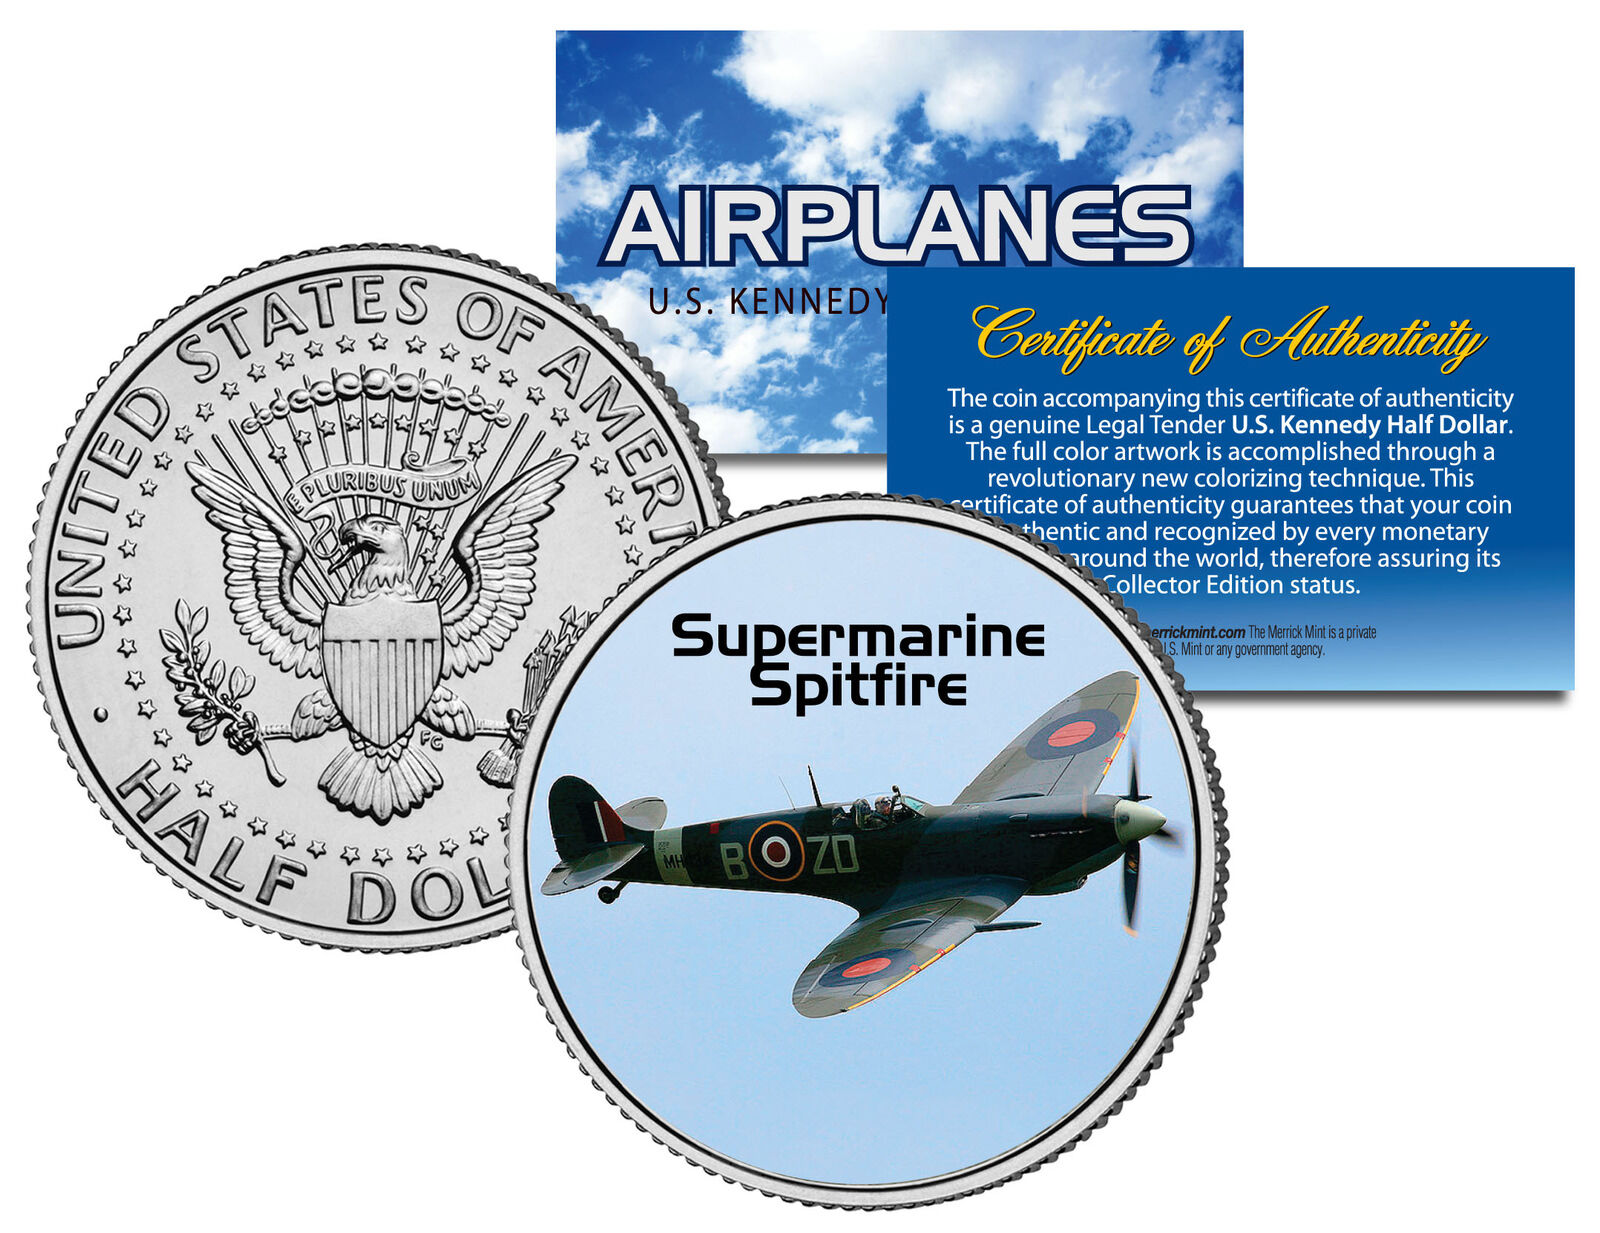 SUPERMARINE SPITFIRE * Airplane Series * JFK Kennedy Half Dollar US Coin